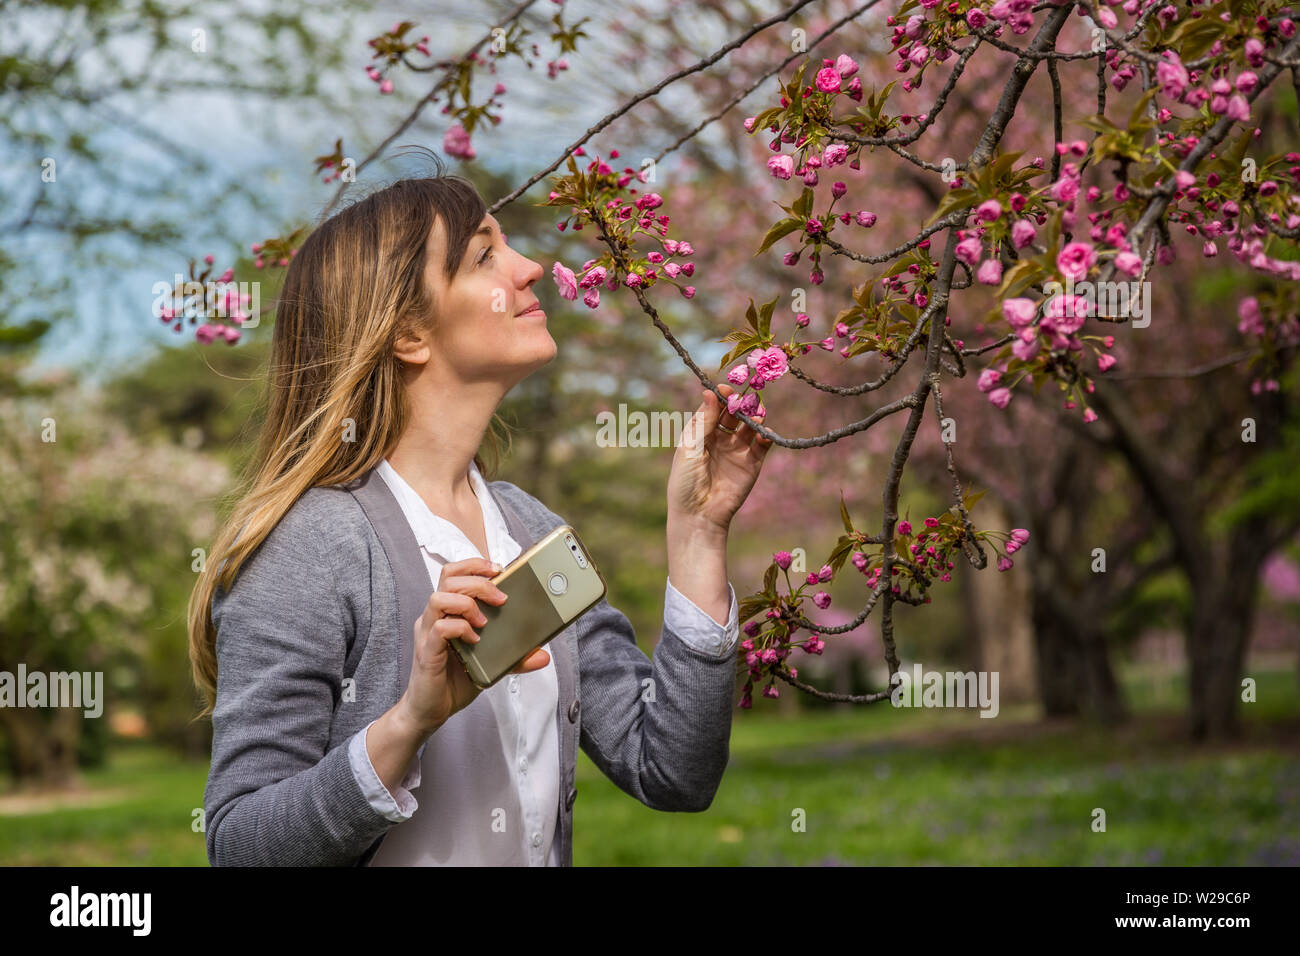 Donna Fotografa di rosa fiori di ciliegio su un albero. Foto Stock